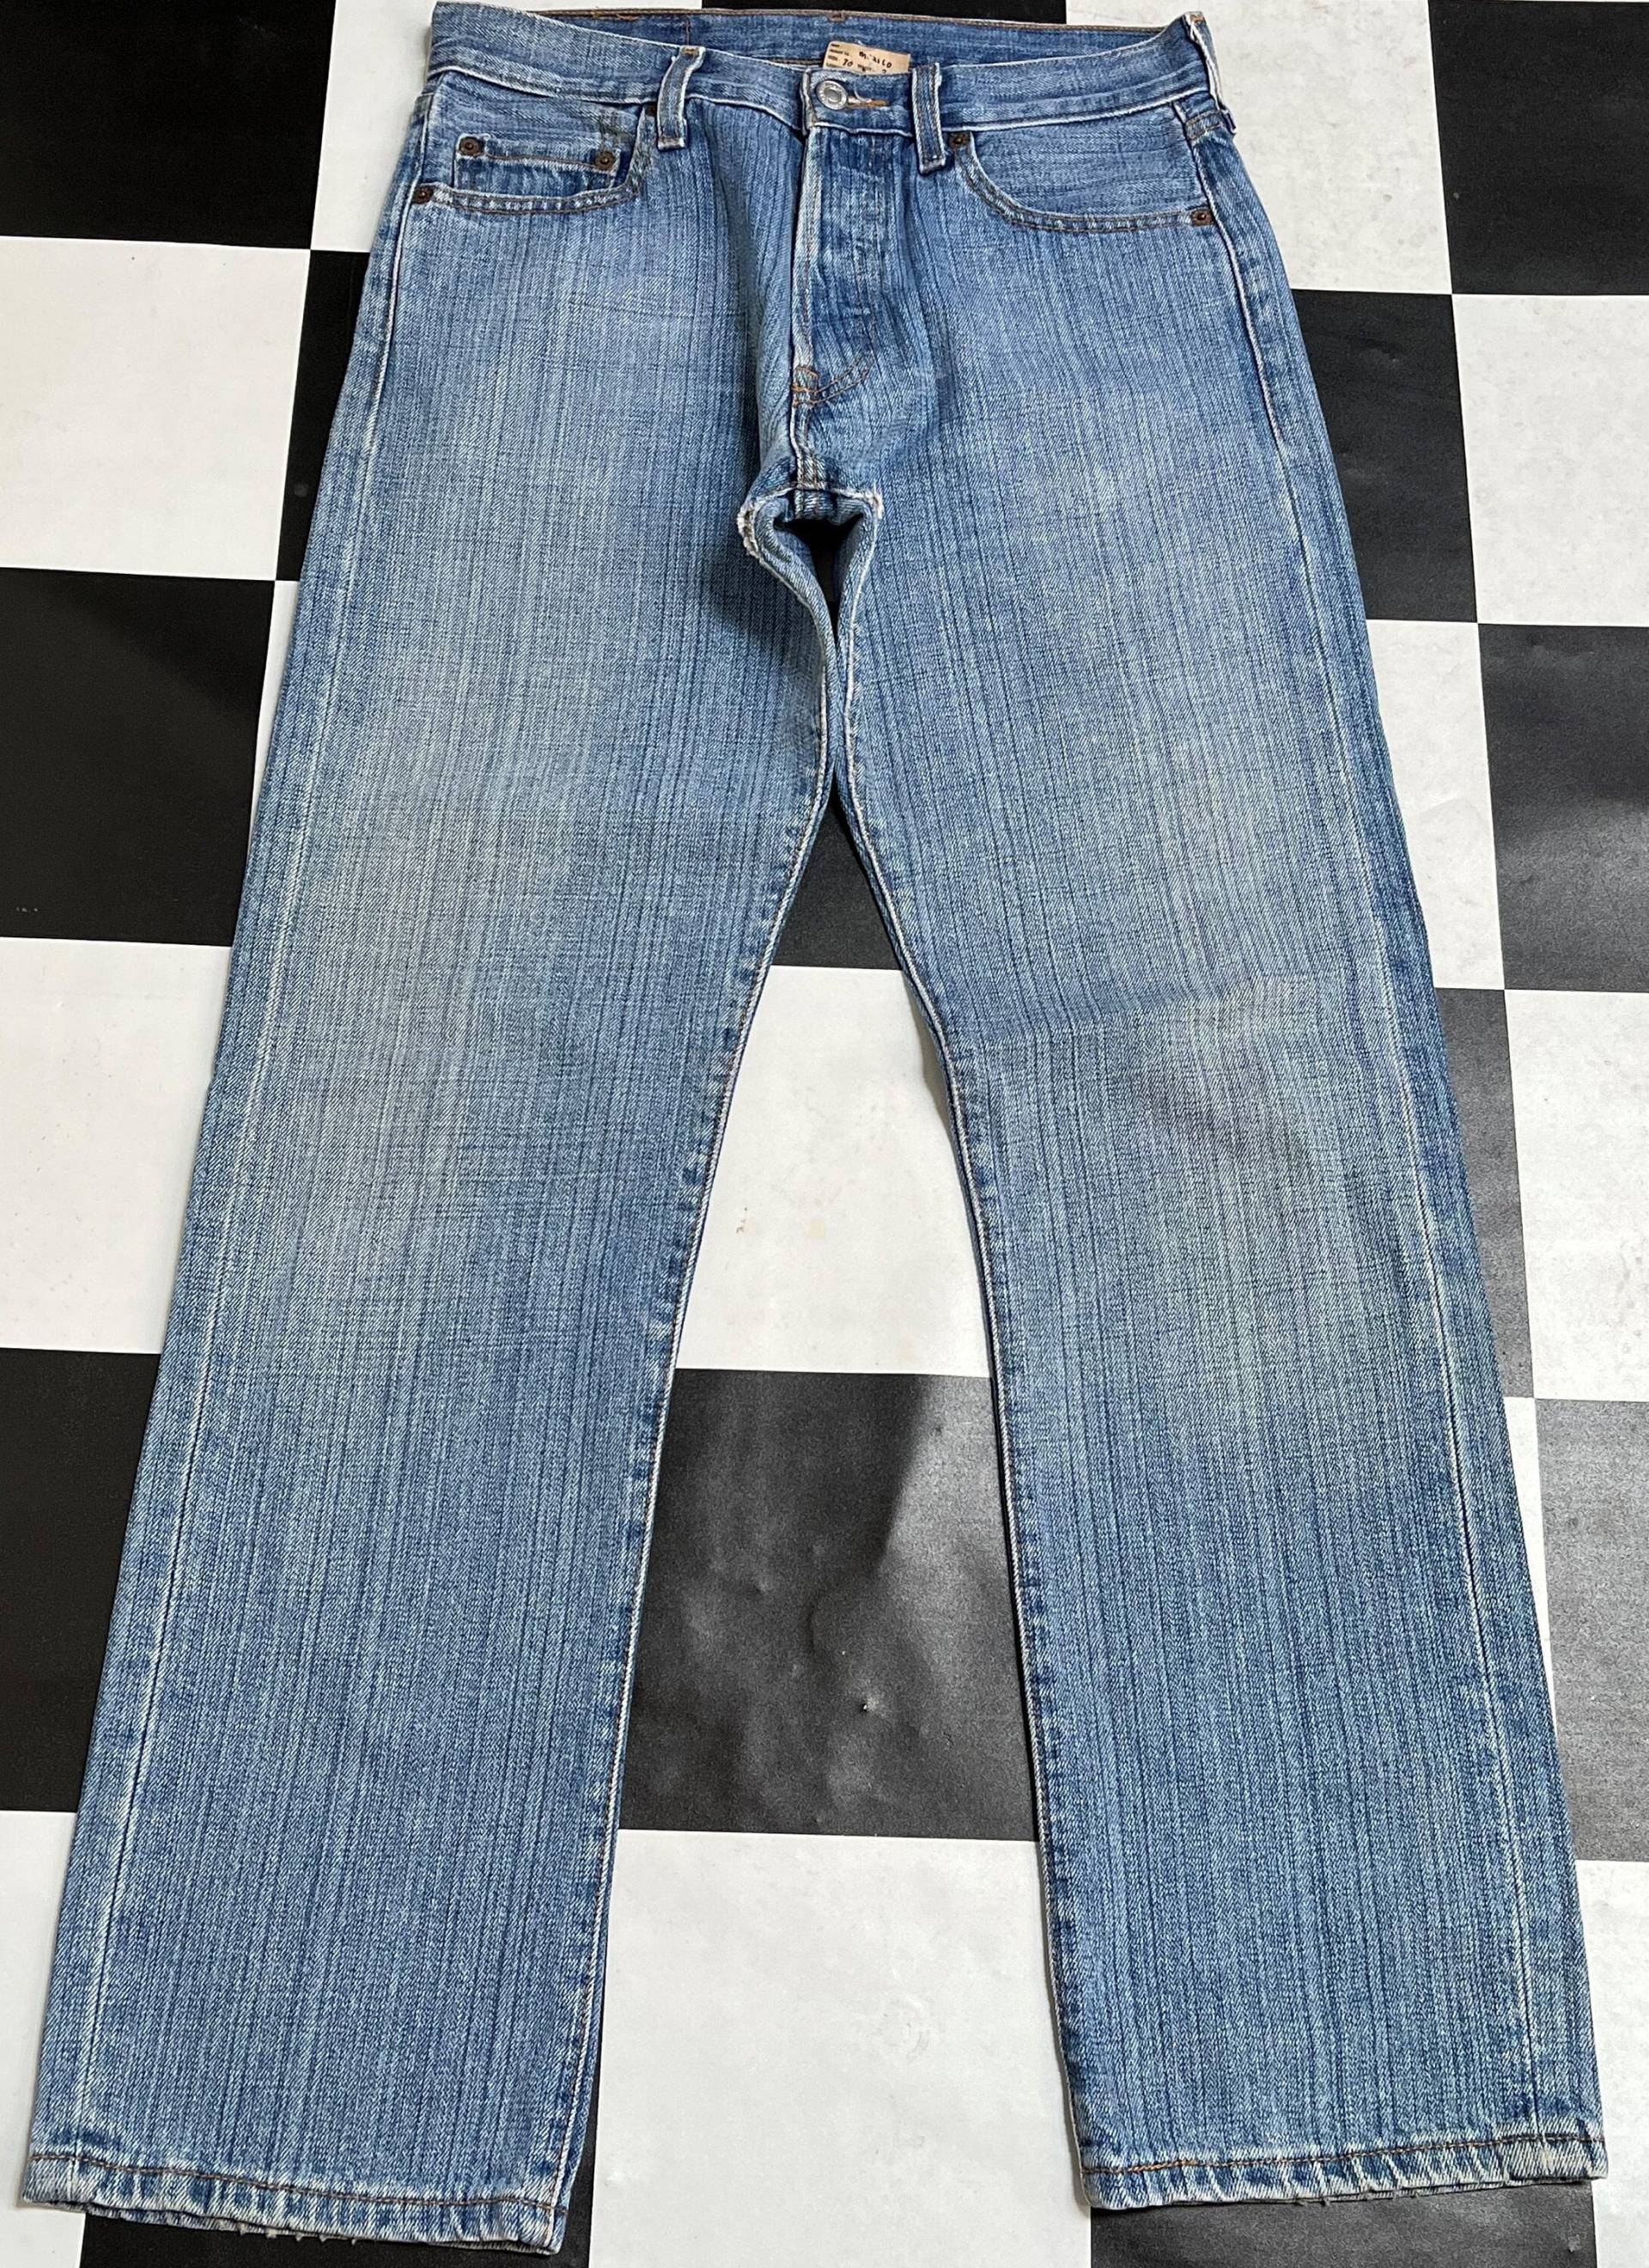 Vintage Levis 501 Jeans, Blue Denim, Verblasste Distressed Männer Jeans Taille 30 von RezekiShopRoom